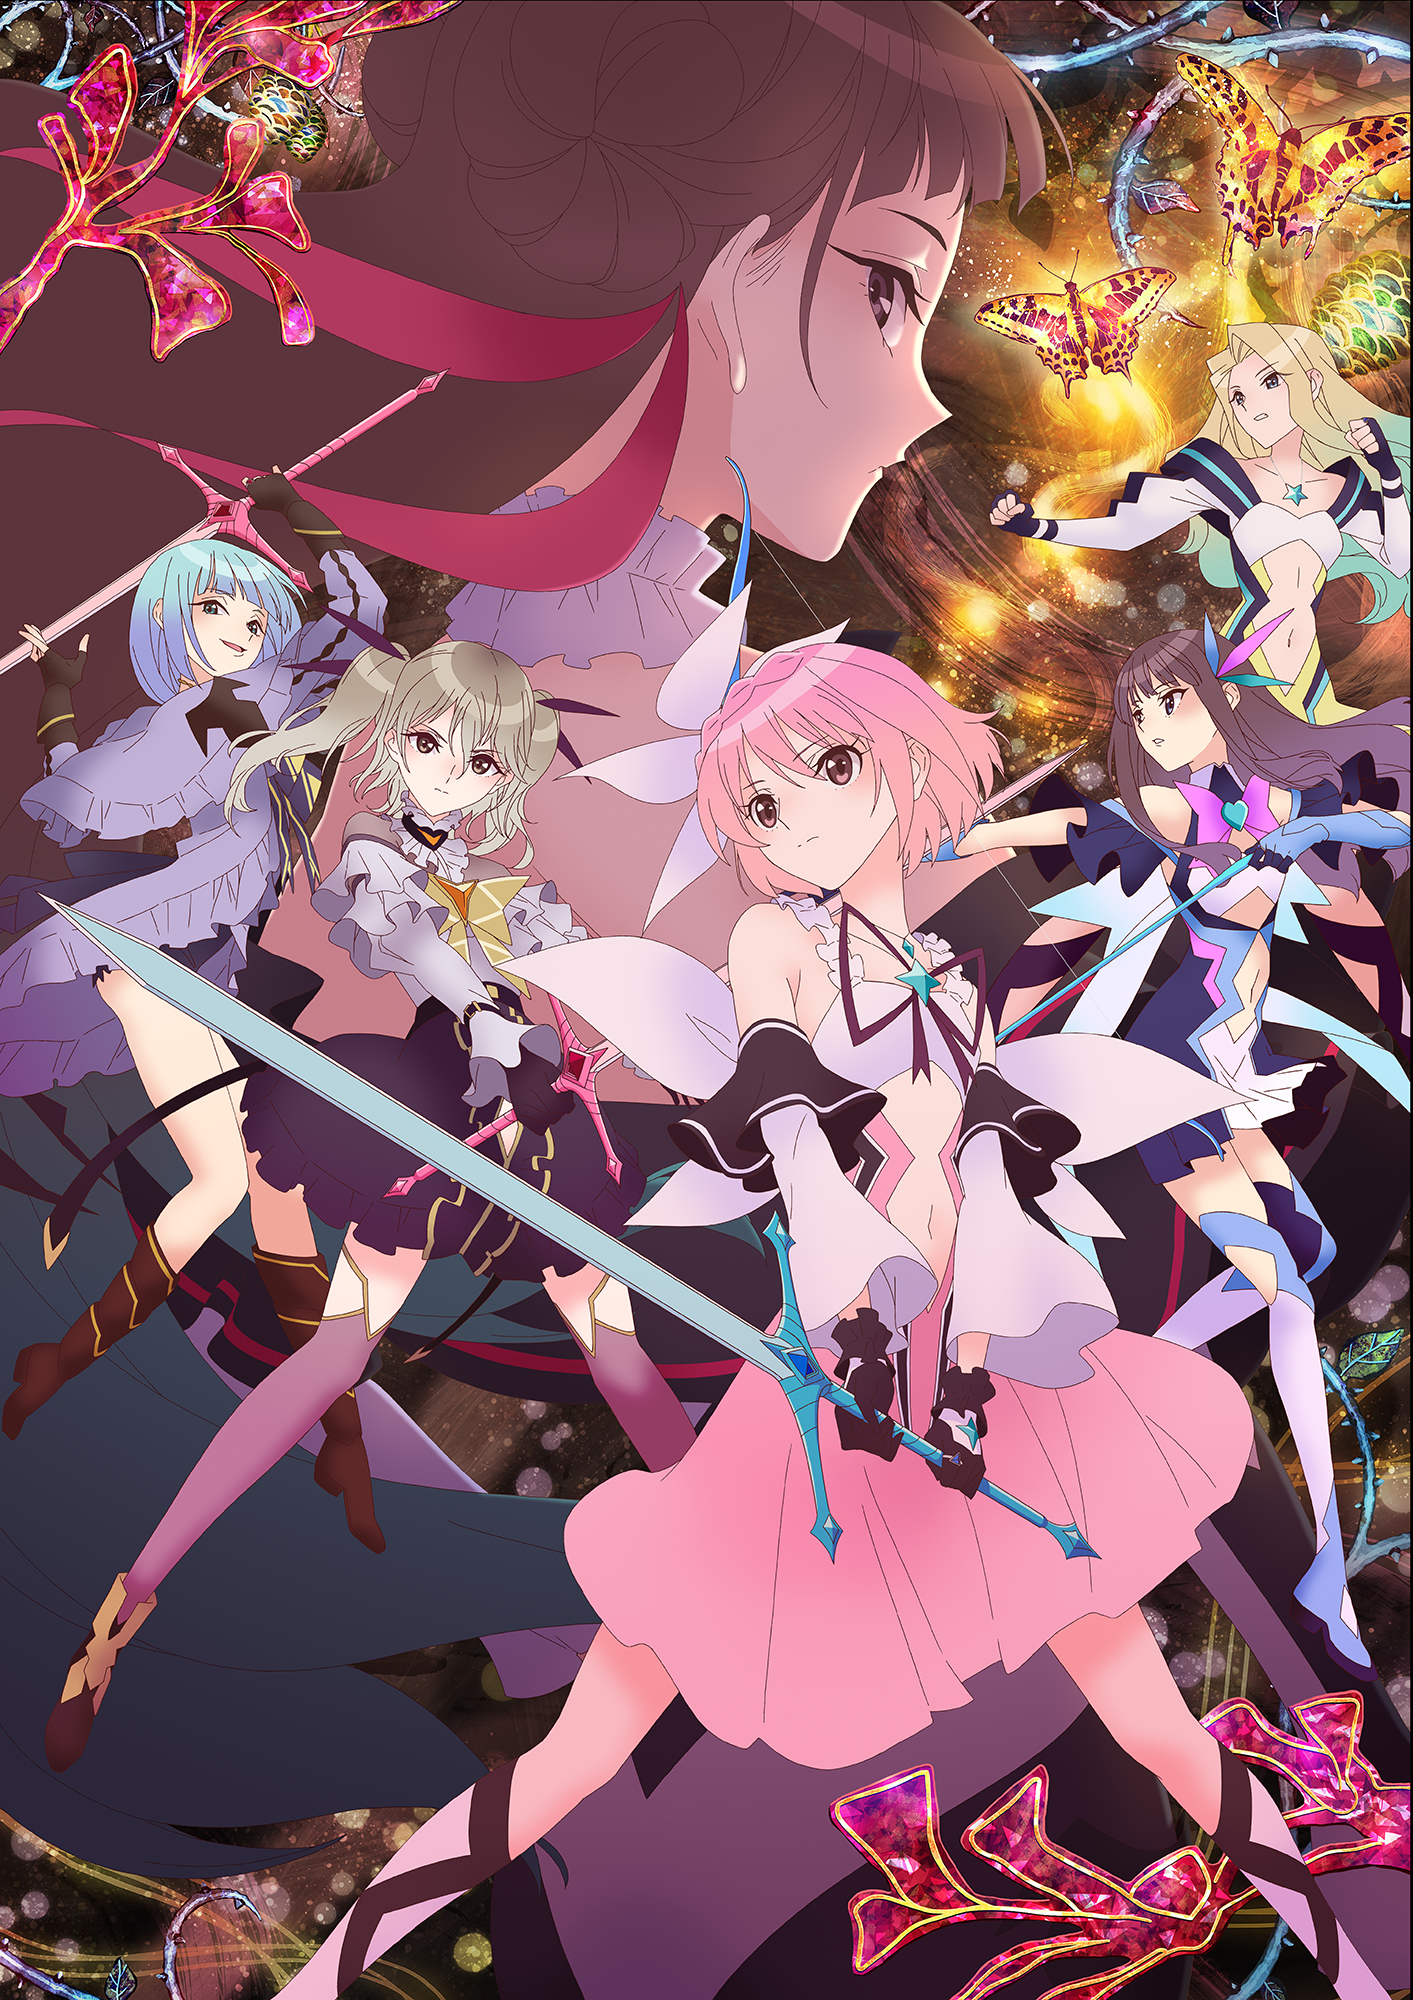 Una imagen clave para el próximo anime de Blue Reflector Ray TV, con los 6 personajes principales posando en su "Reflector" formas de batalla de chicas mágicas.